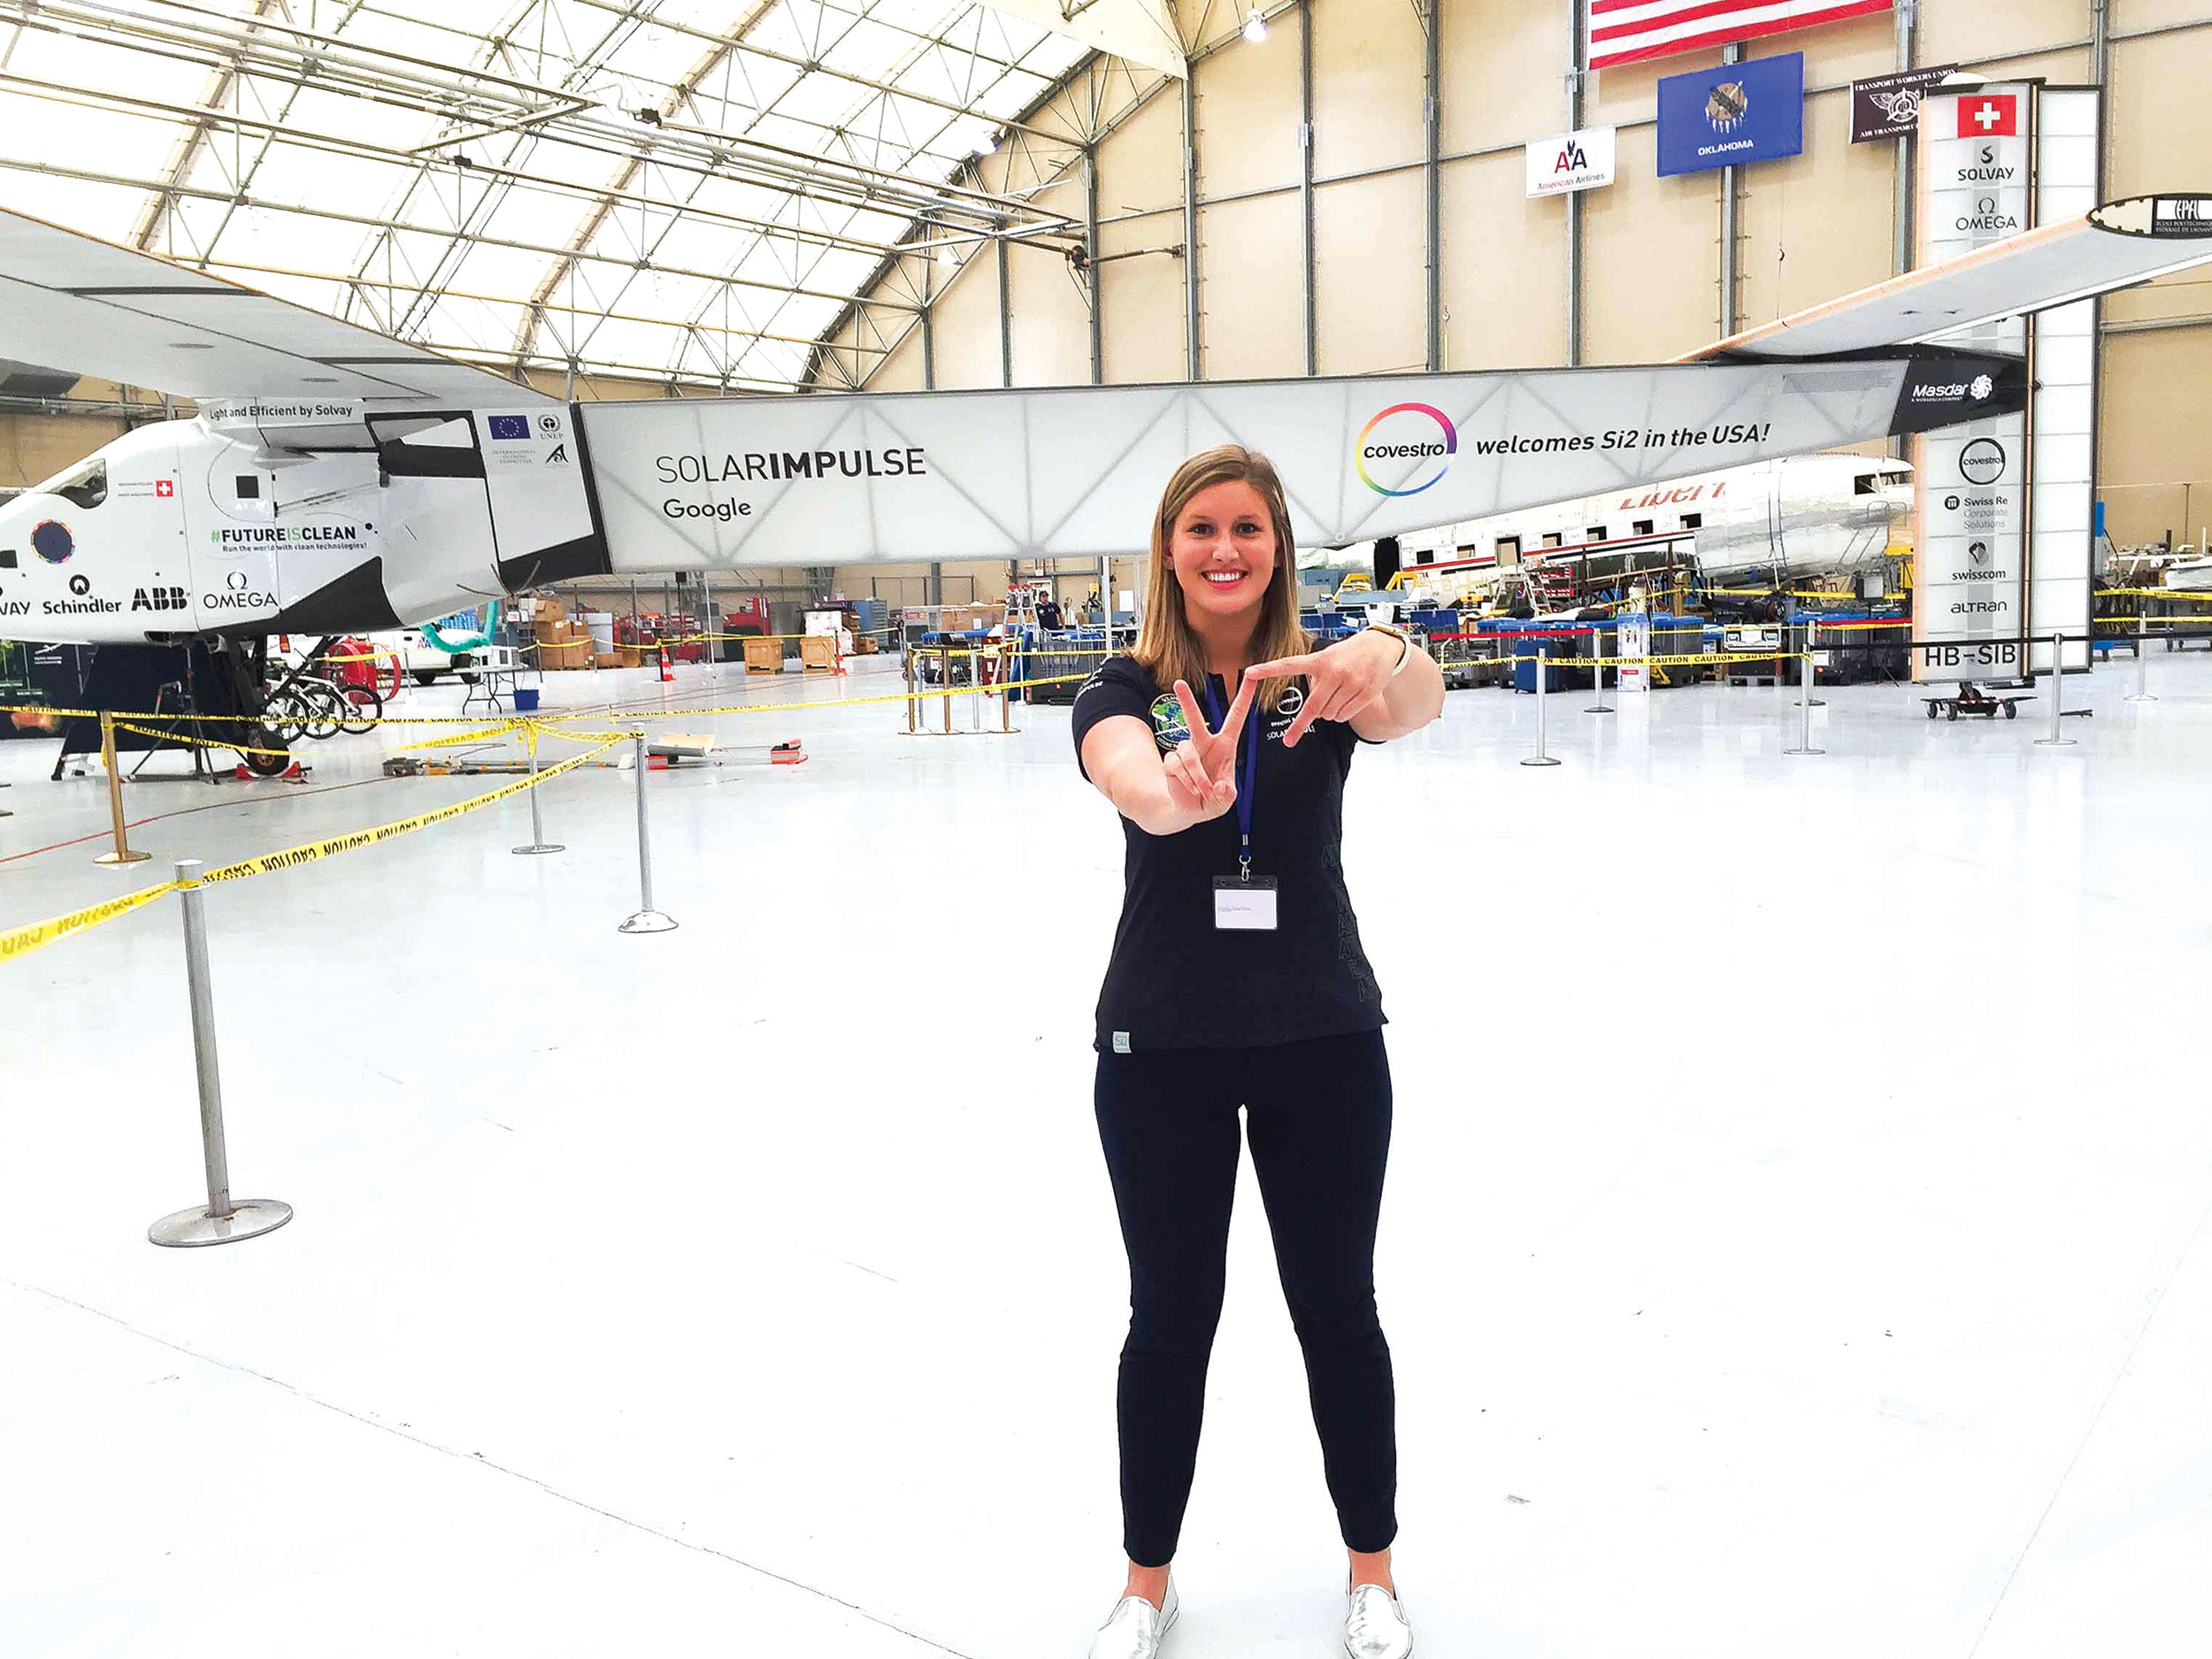 Paige Kassalen and SolarImpulse